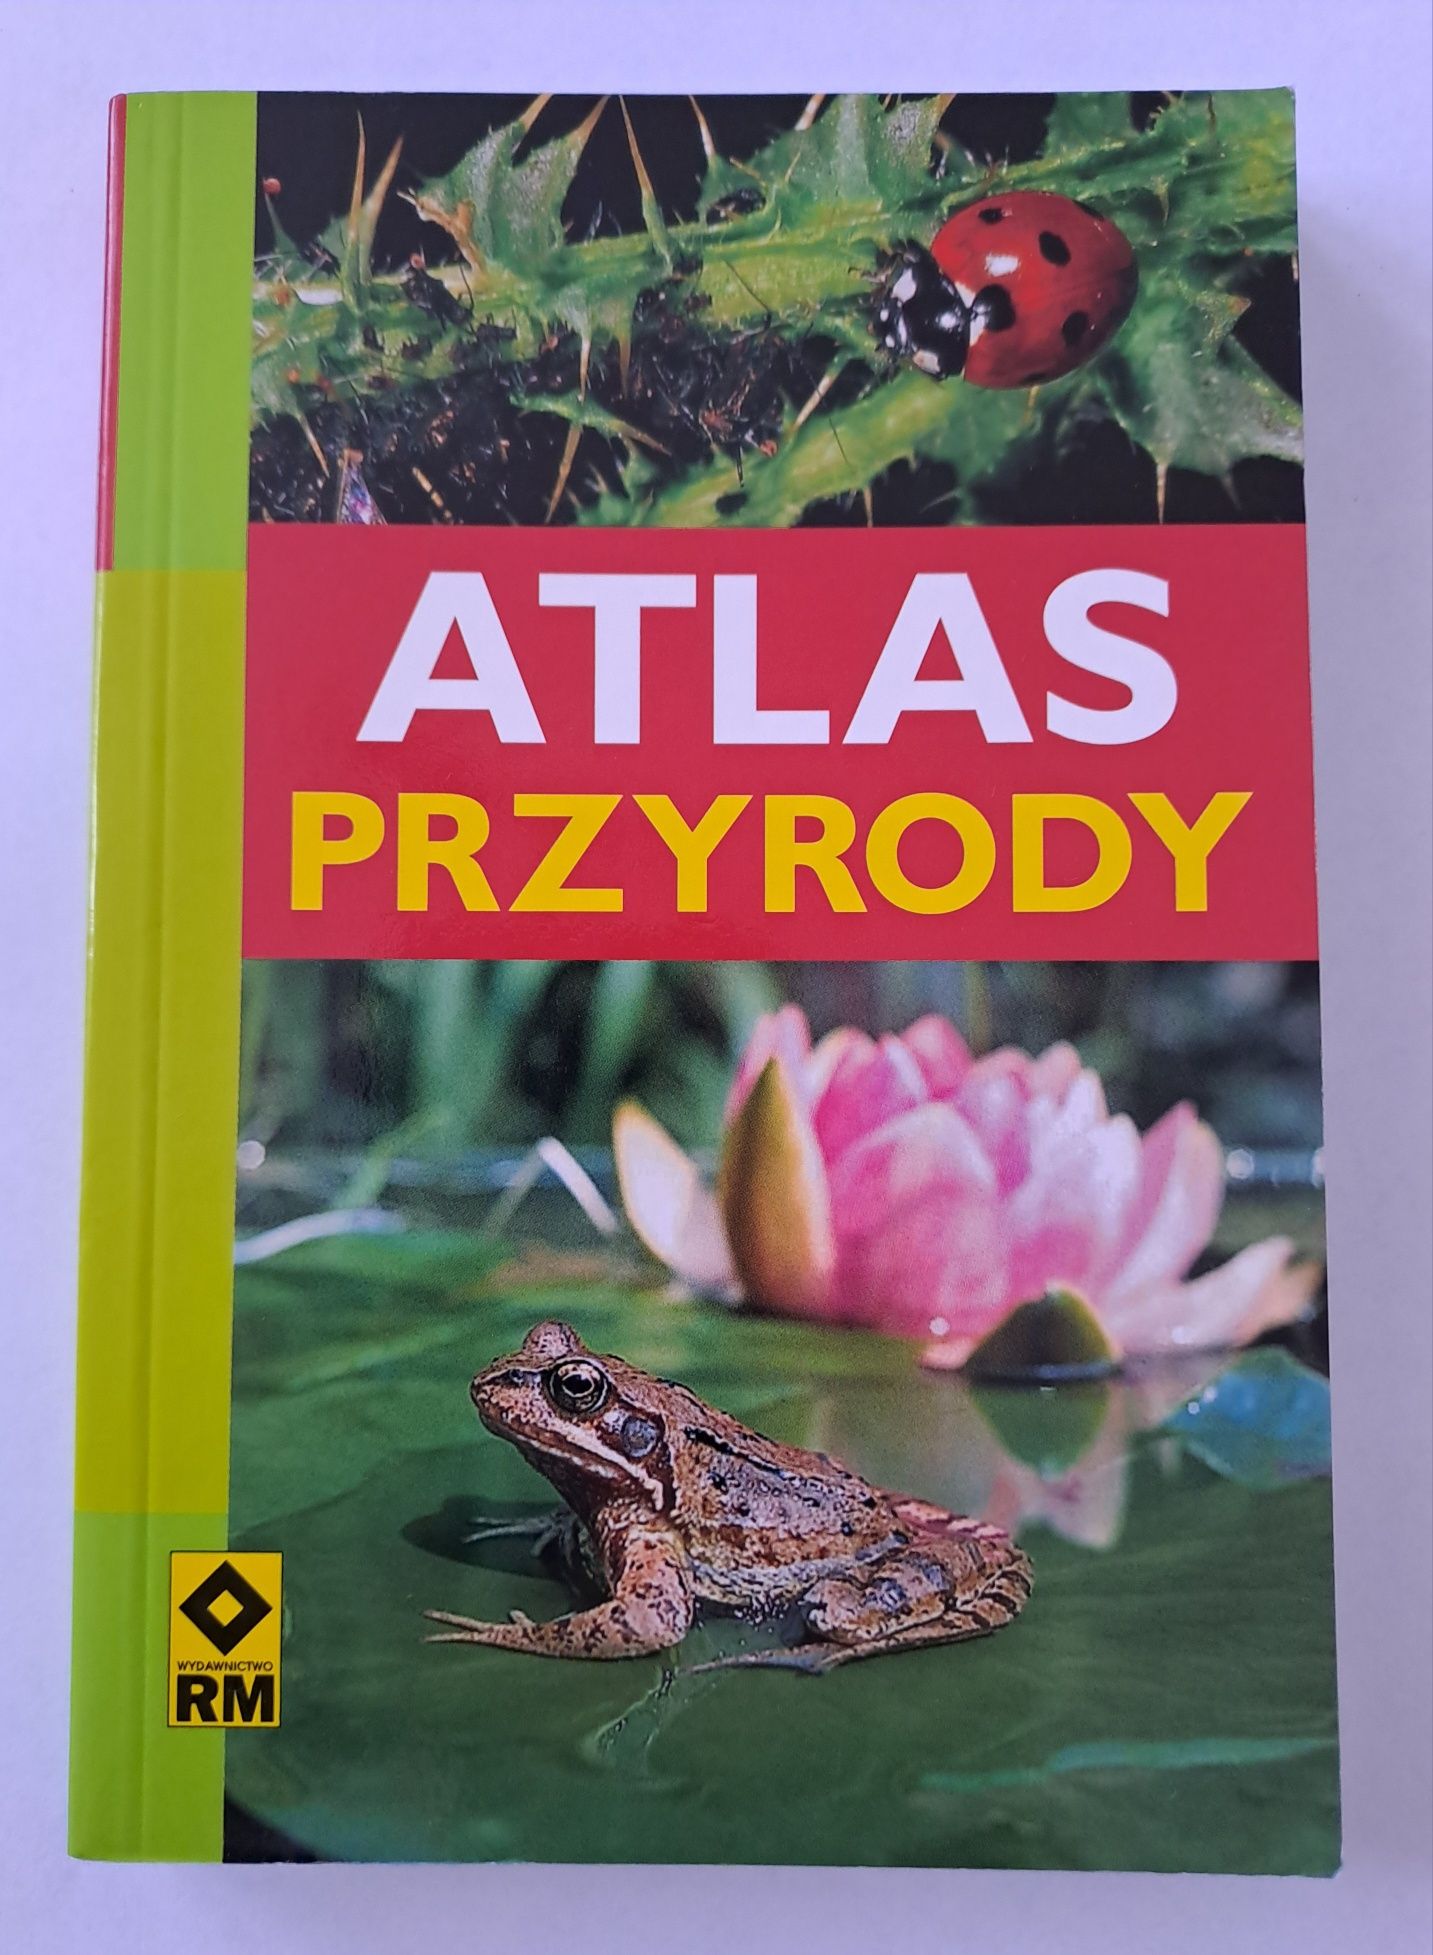 Atlas przyrody, wydawnictwo RM